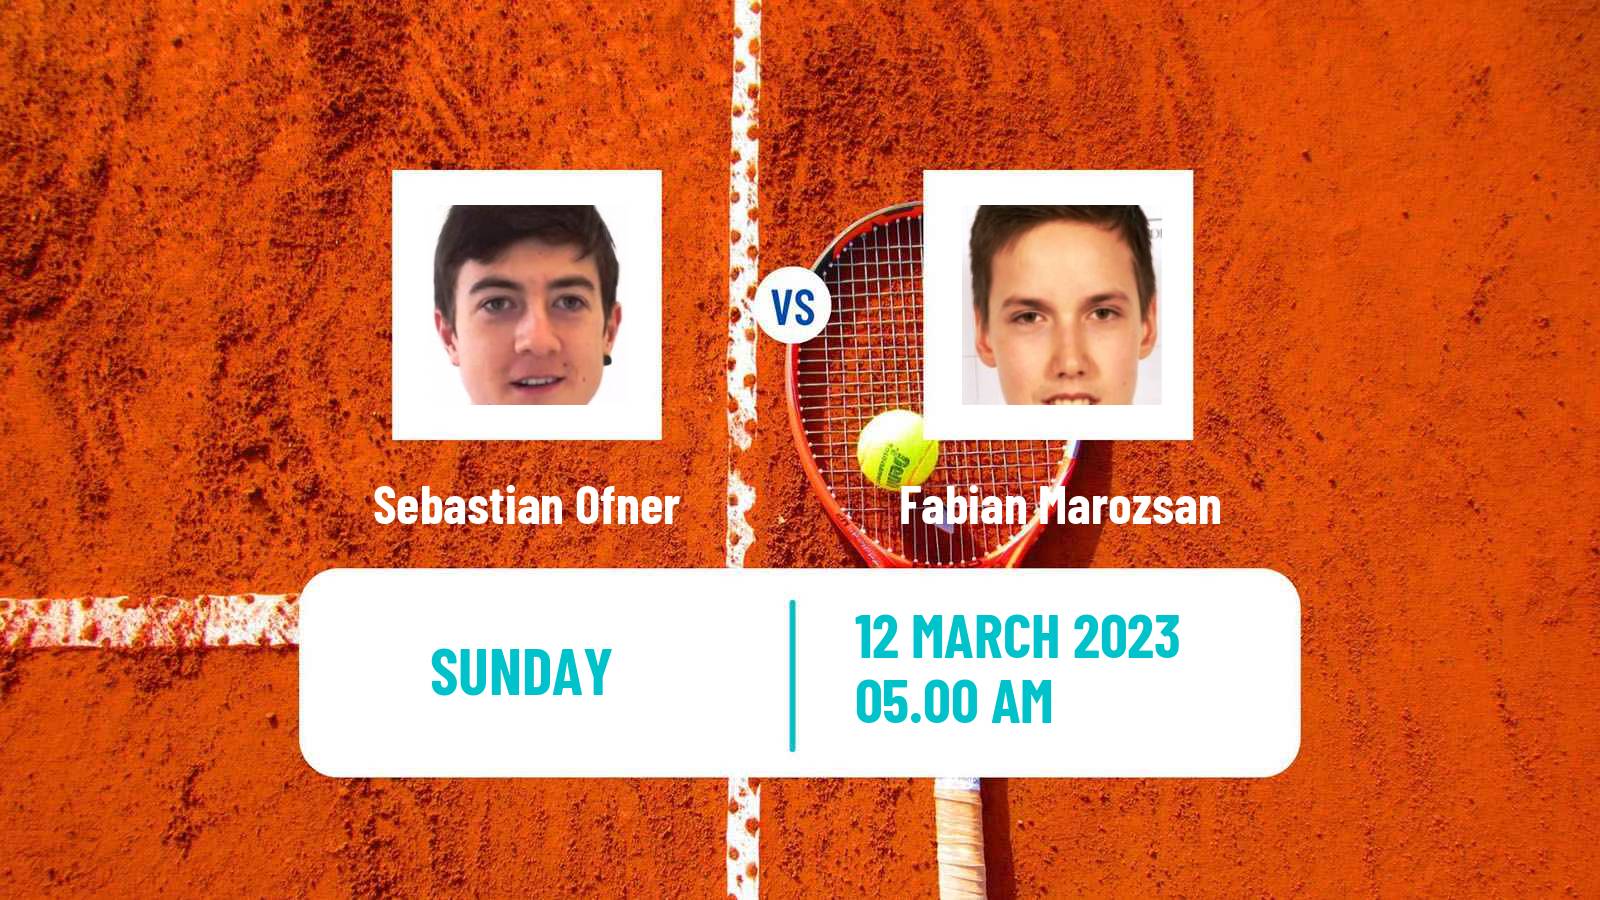 Tennis ATP Challenger Sebastian Ofner - Fabian Marozsan